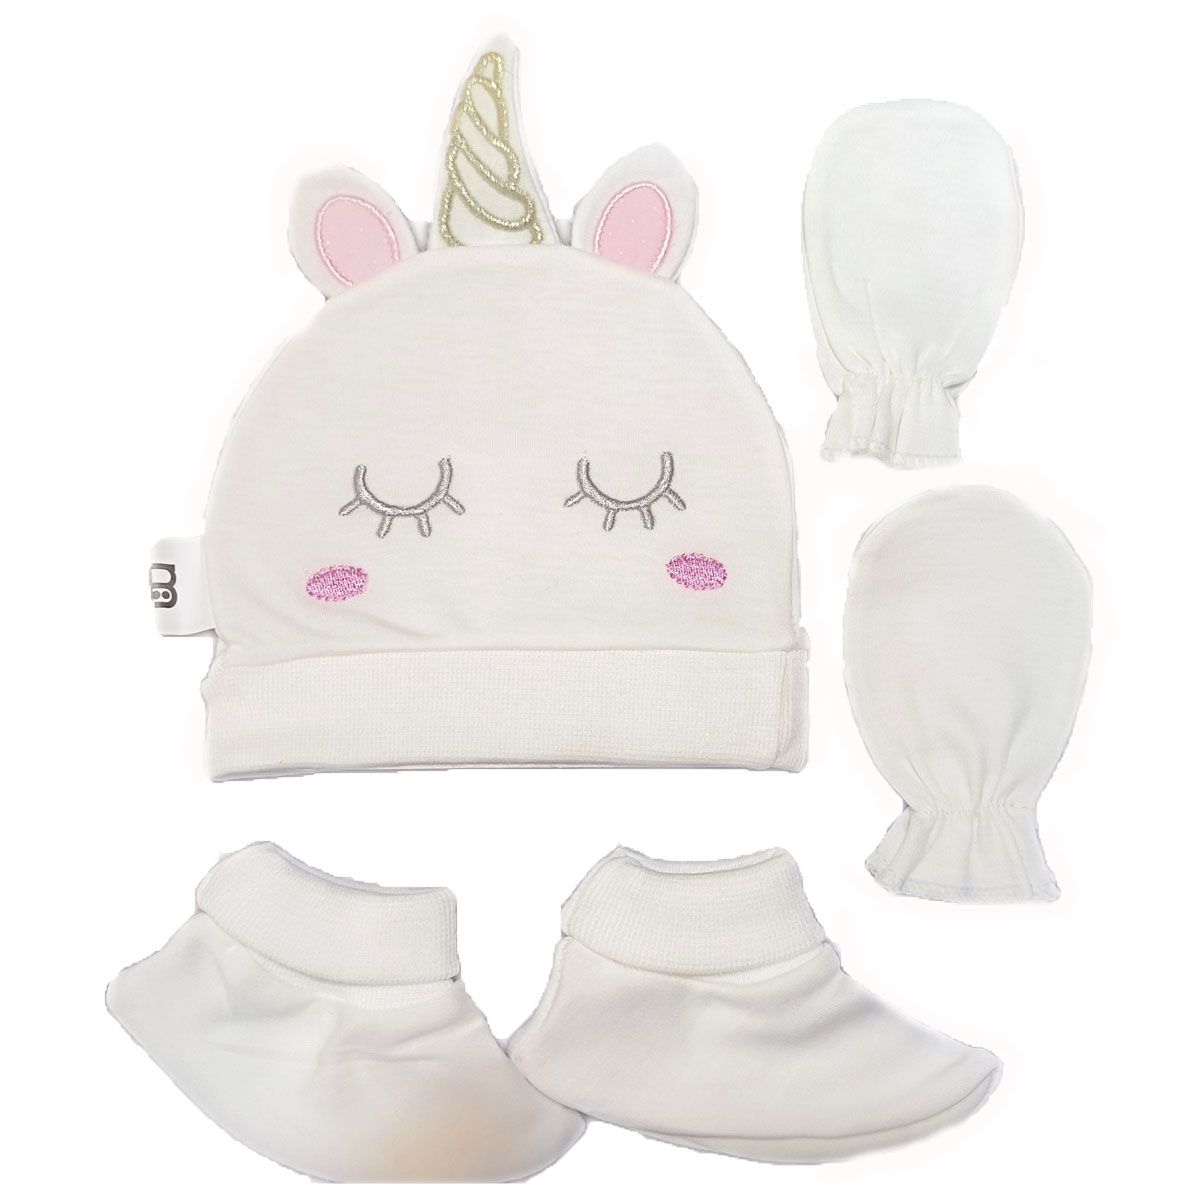 ست کلاه و دستکش و پاپوش نوزادی مادرکر مدل unicorn -  - 1